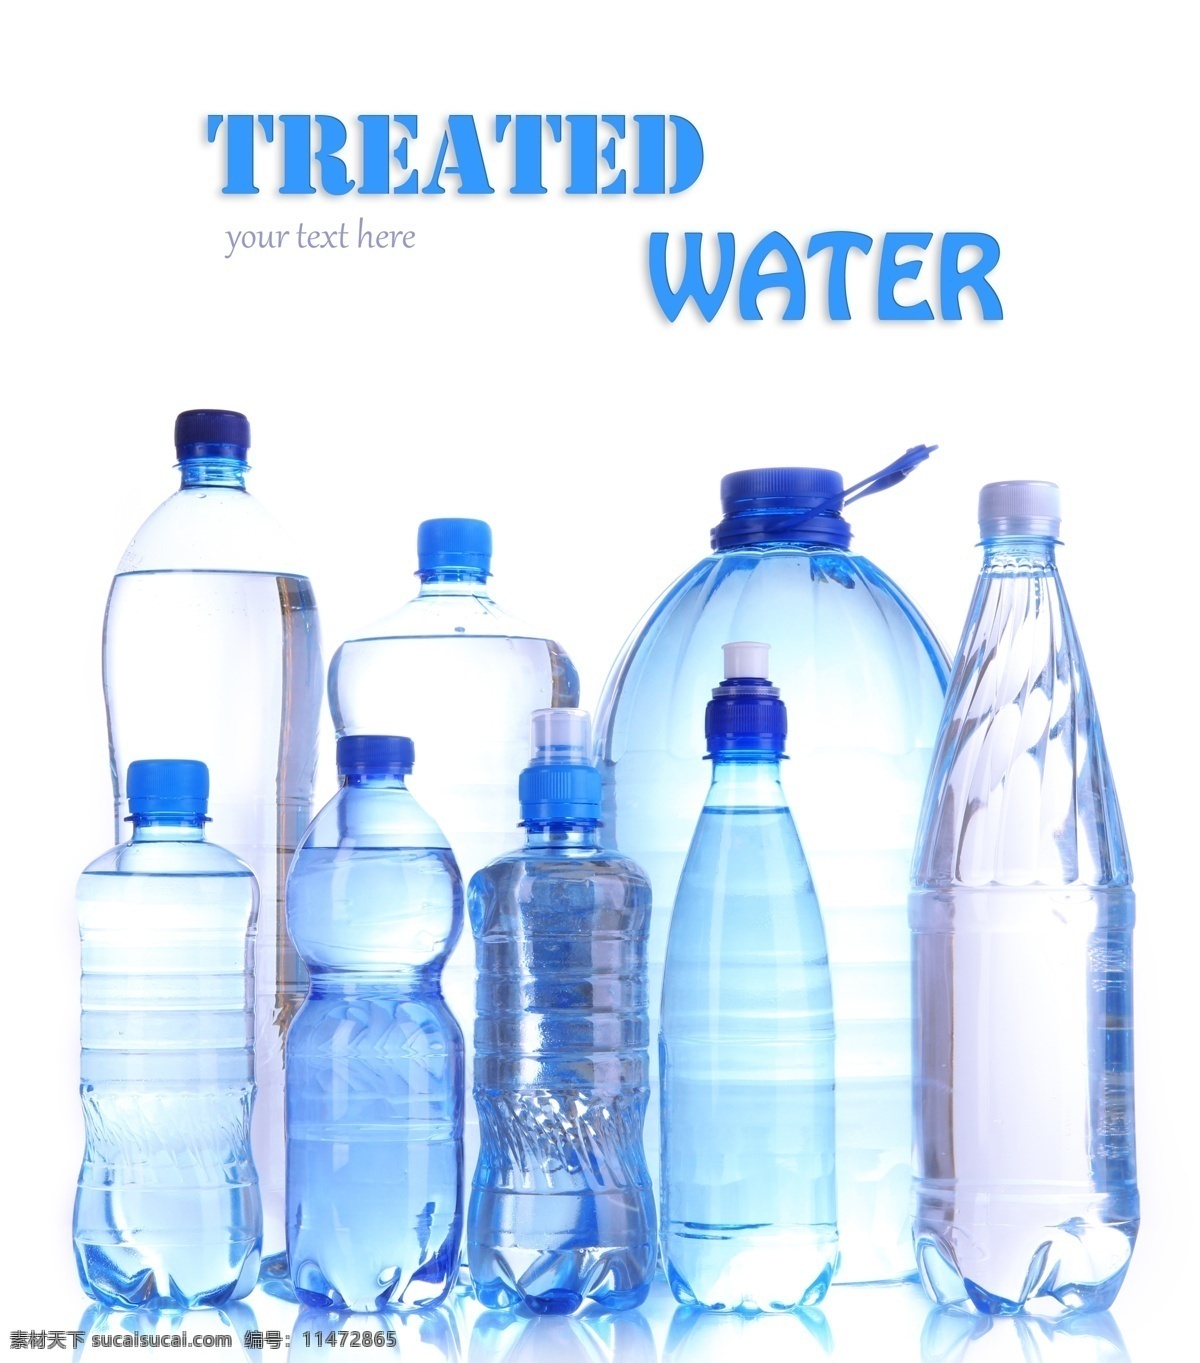 纯净水 矿泉水 瓶装水 饮用水 生命之水 饮水 水 矢量素材 饮料酒水 餐饮美食